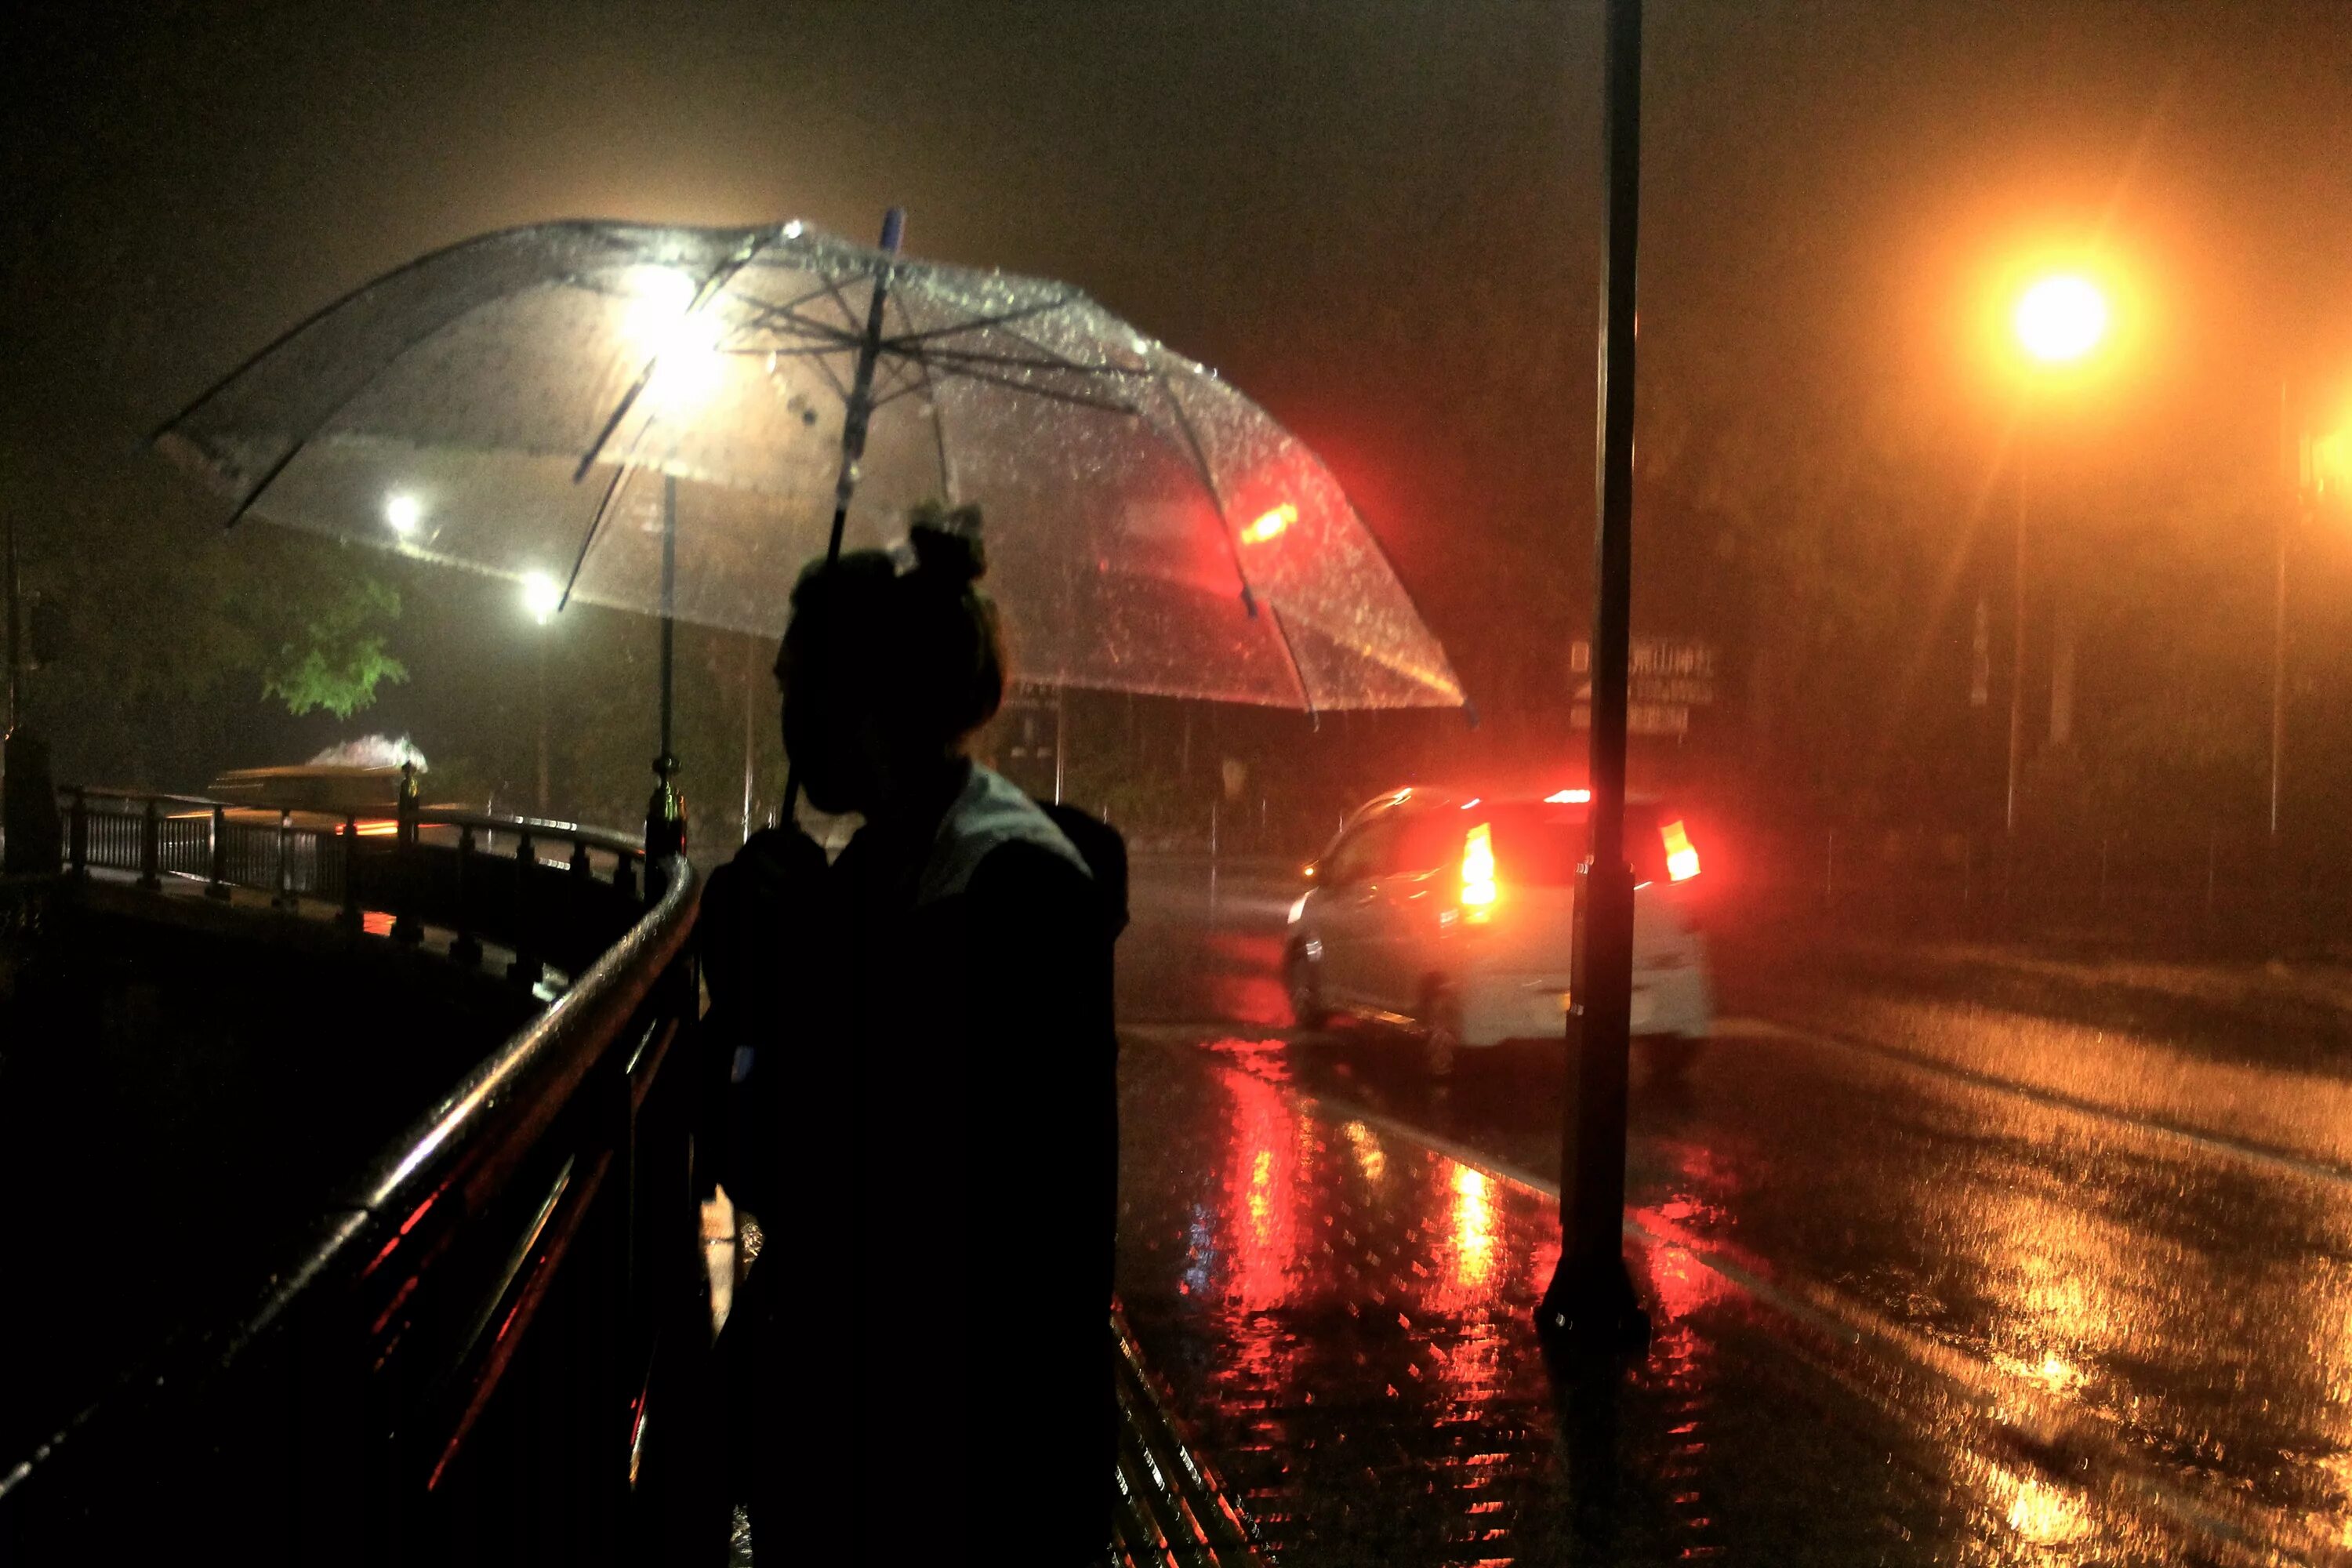 Дождь ночью. Человек под зонтом. Город ночью под дождем. "Дождливый вечер". Сегодня ночь дождь есть